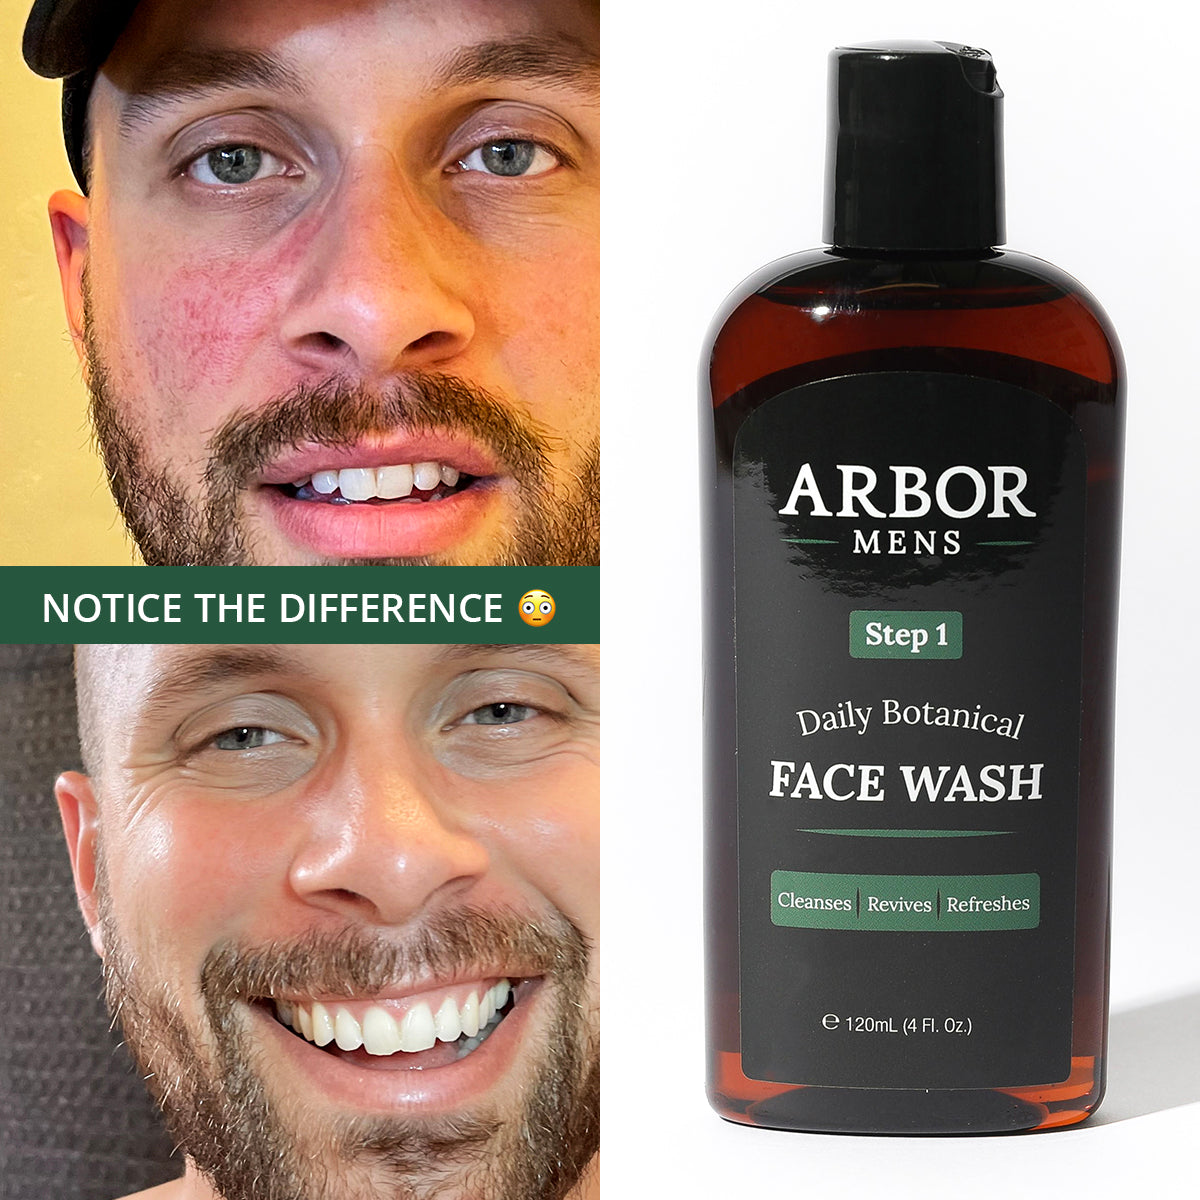 Daily Botanical Face Wash